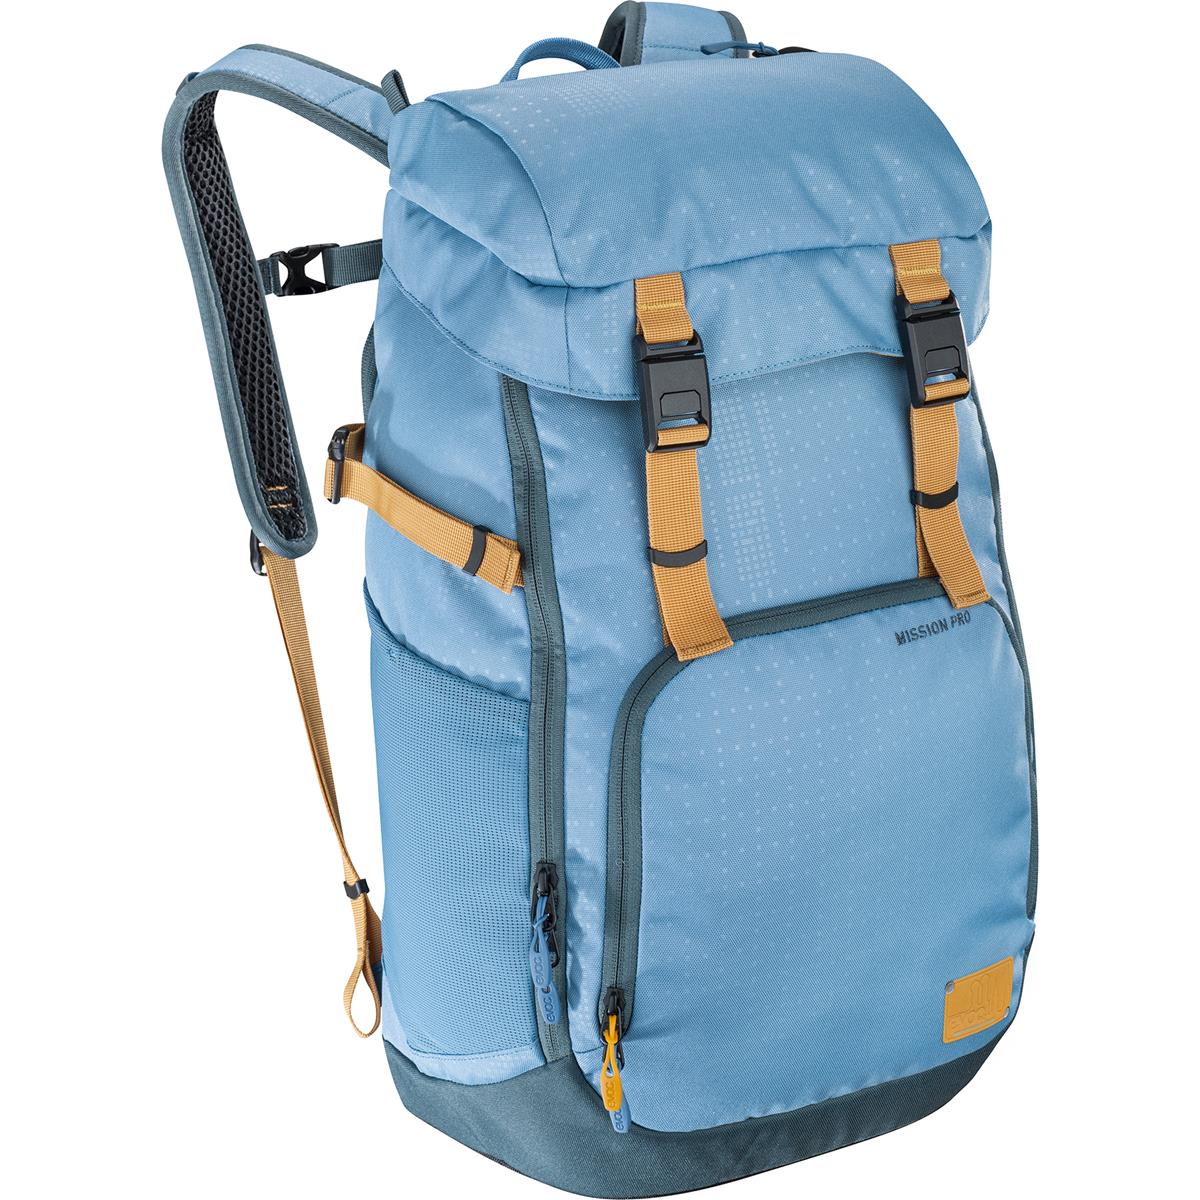 Evoc Backpack Mission Pro Copen Blue, 28 L